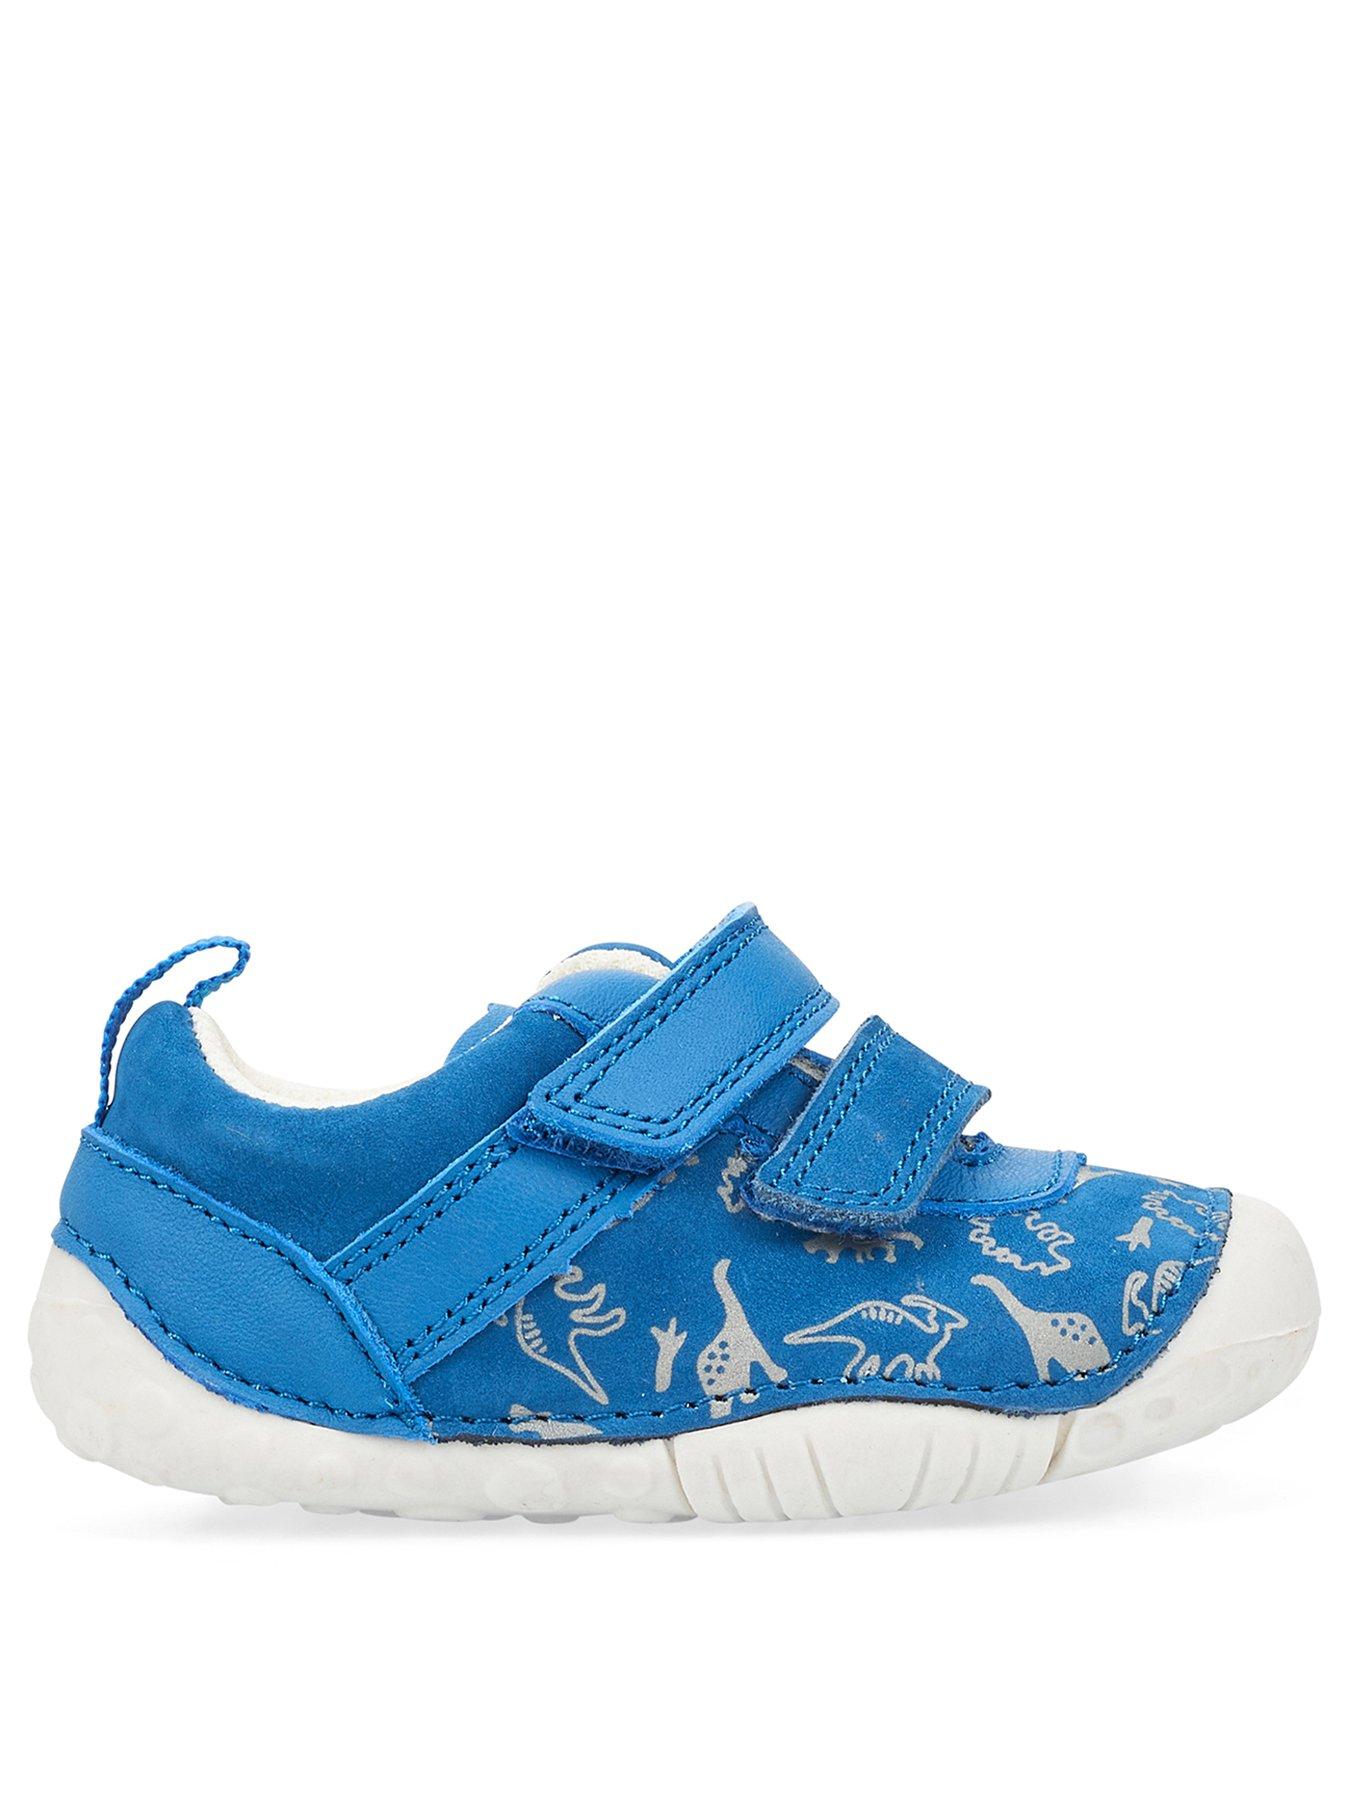 Shoes & boots Roar Baby Strap Shoe - Blue